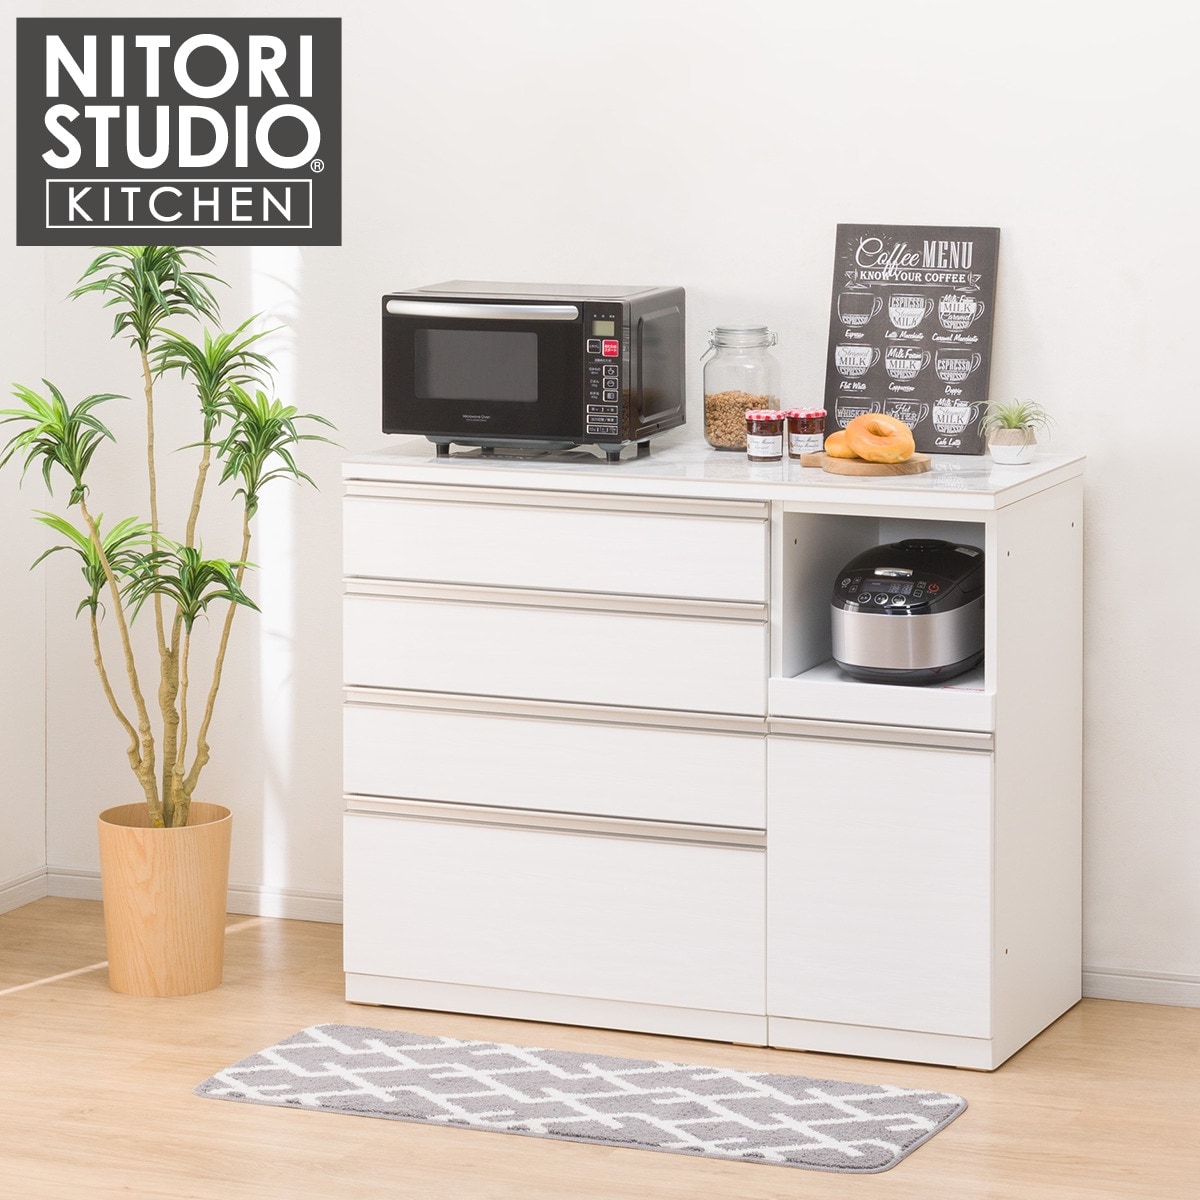 ニトリ 120CT キッチンカウンター NITORI - キッチン収納